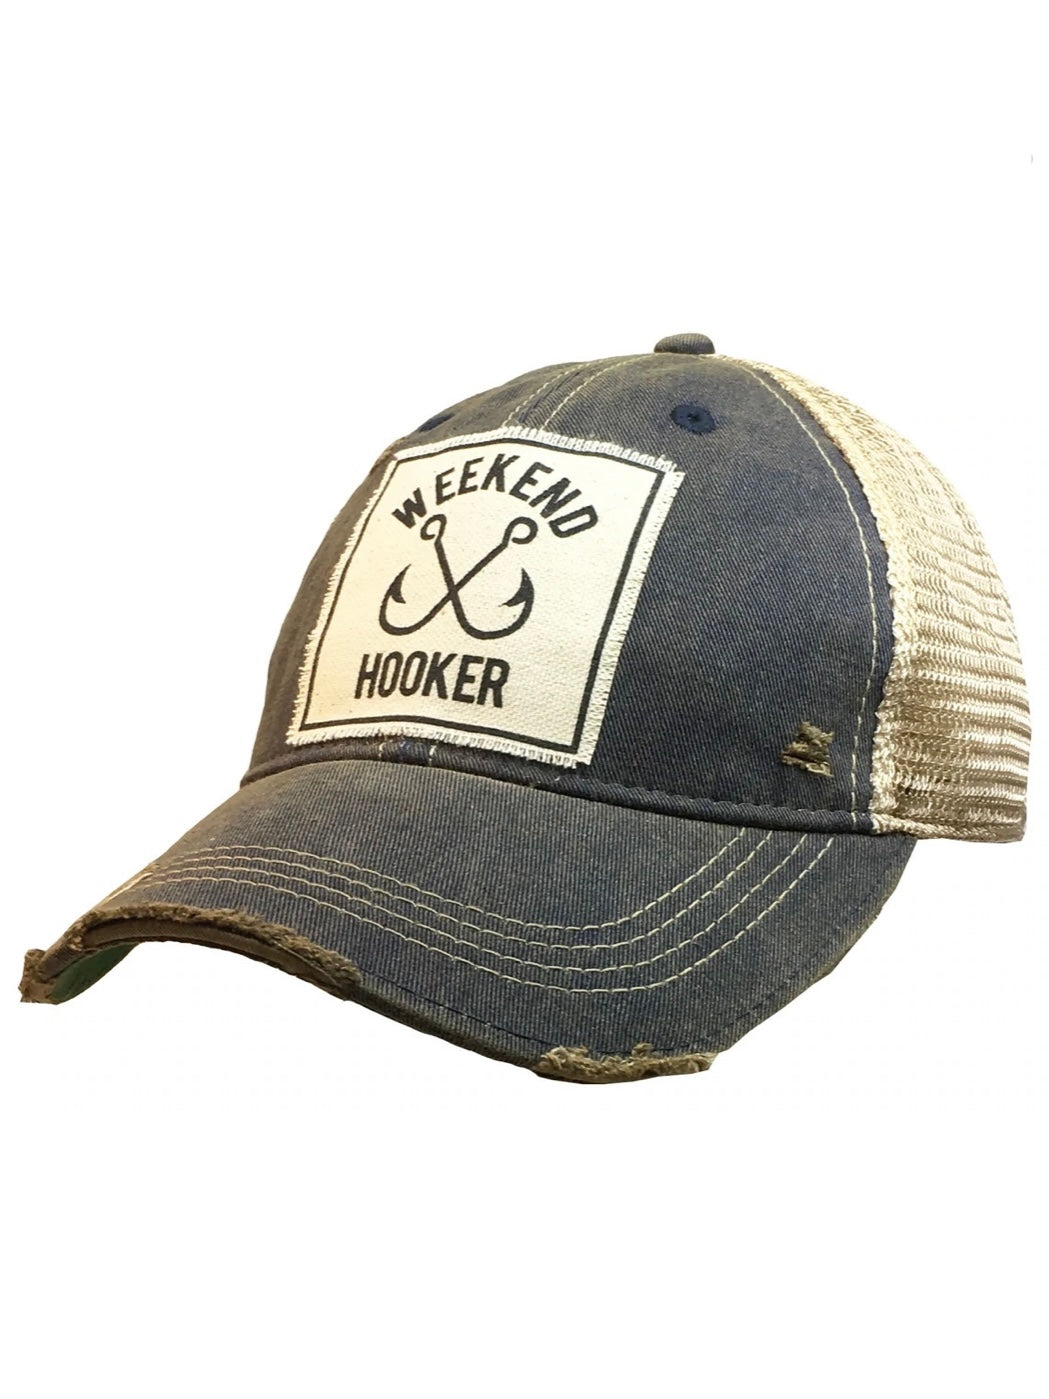 Outdoorsy Trucker Hats